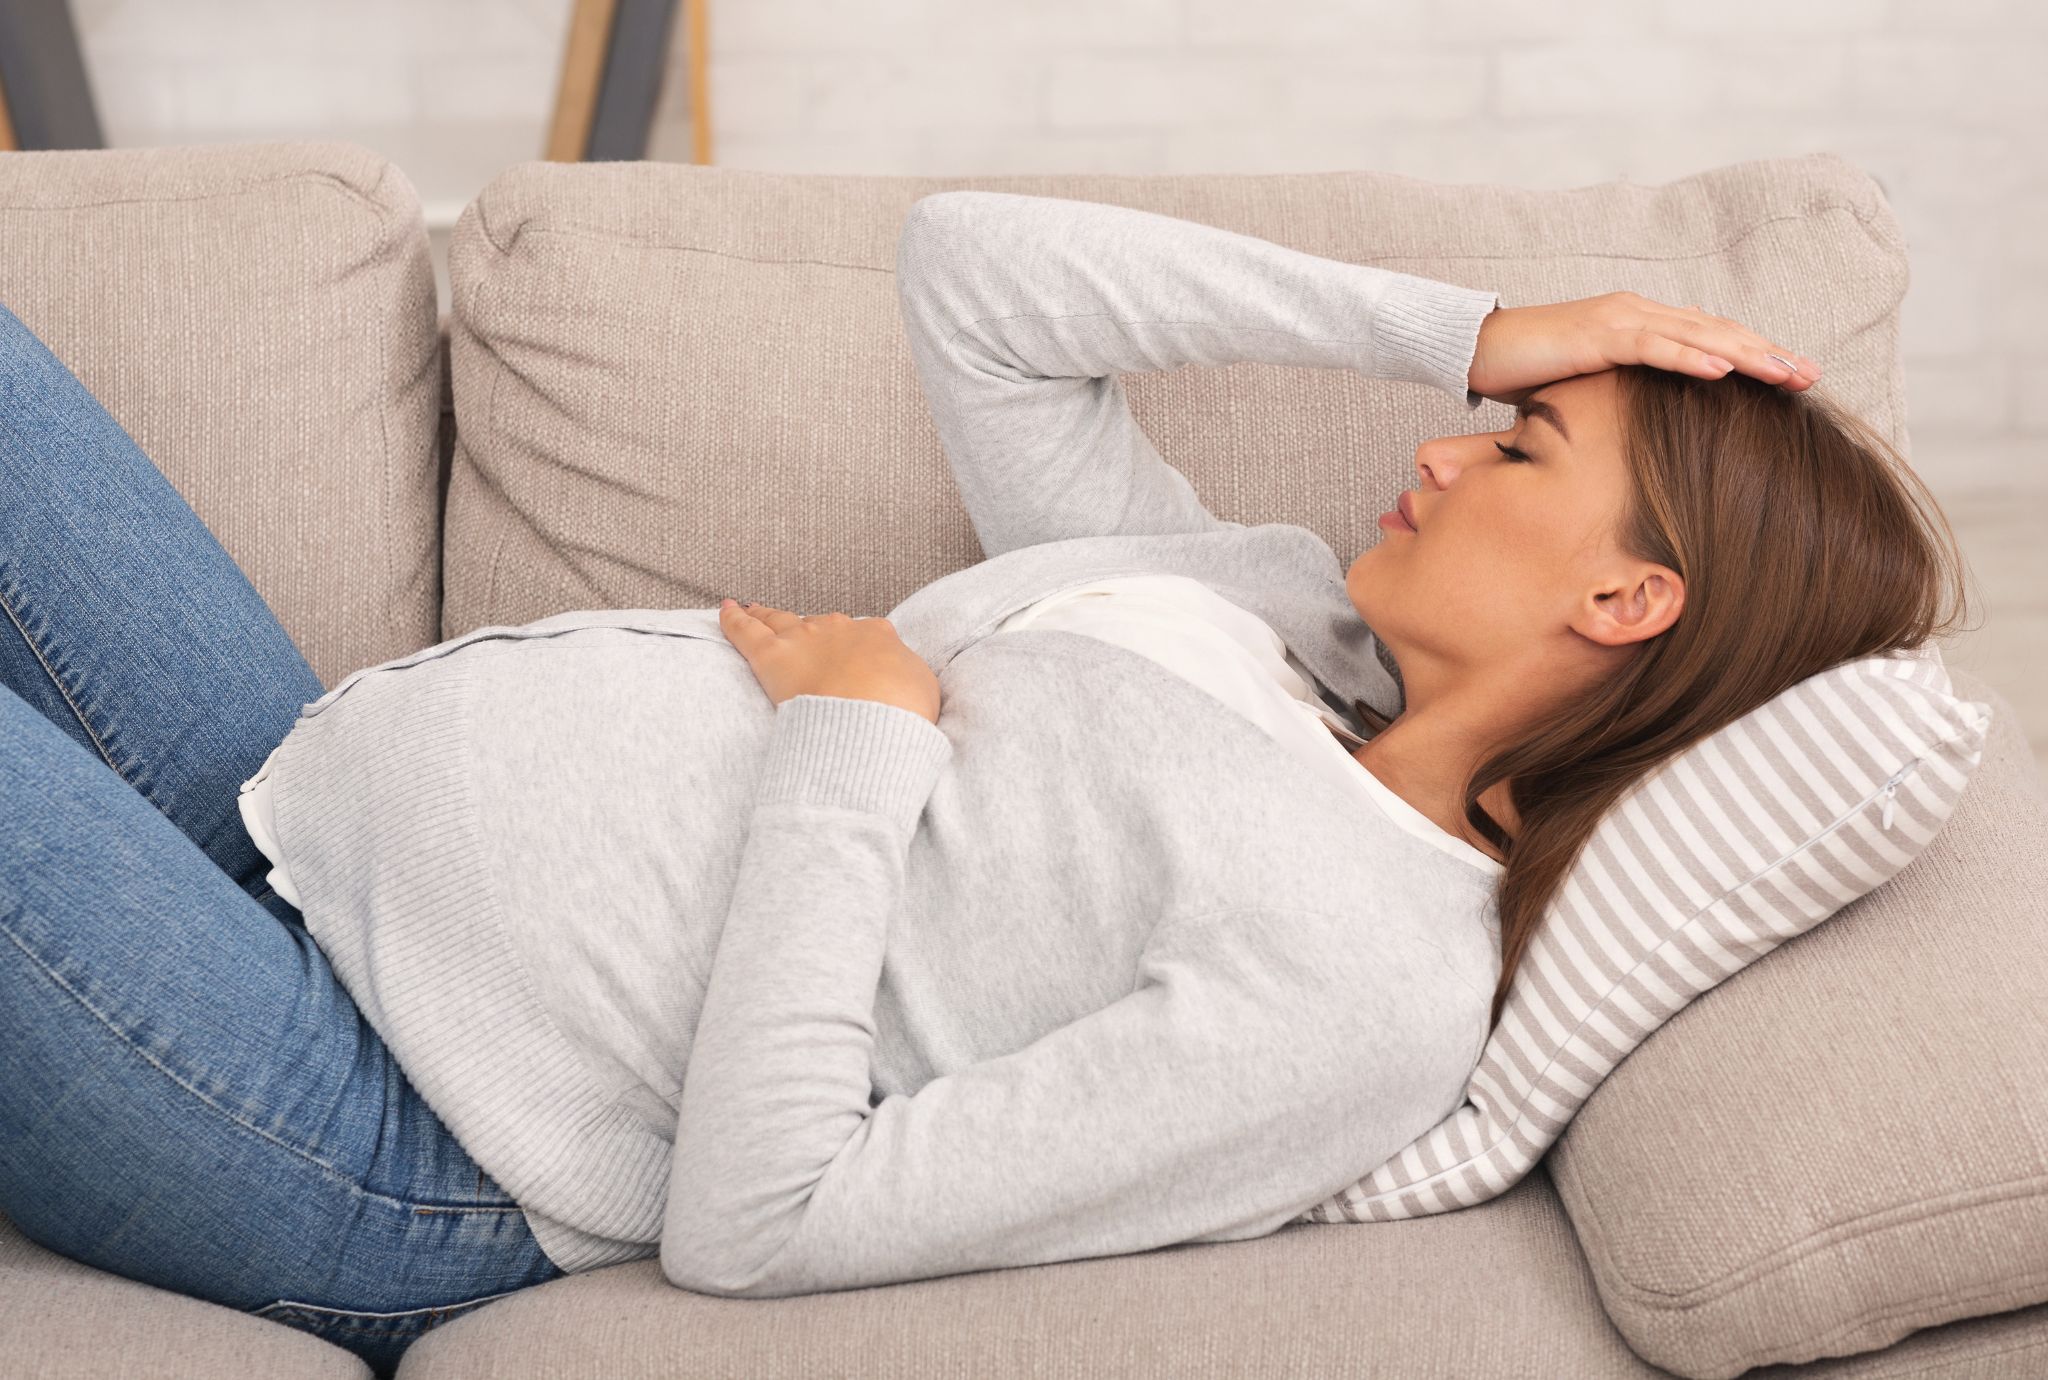 Dolor abdominal durante el embarazo